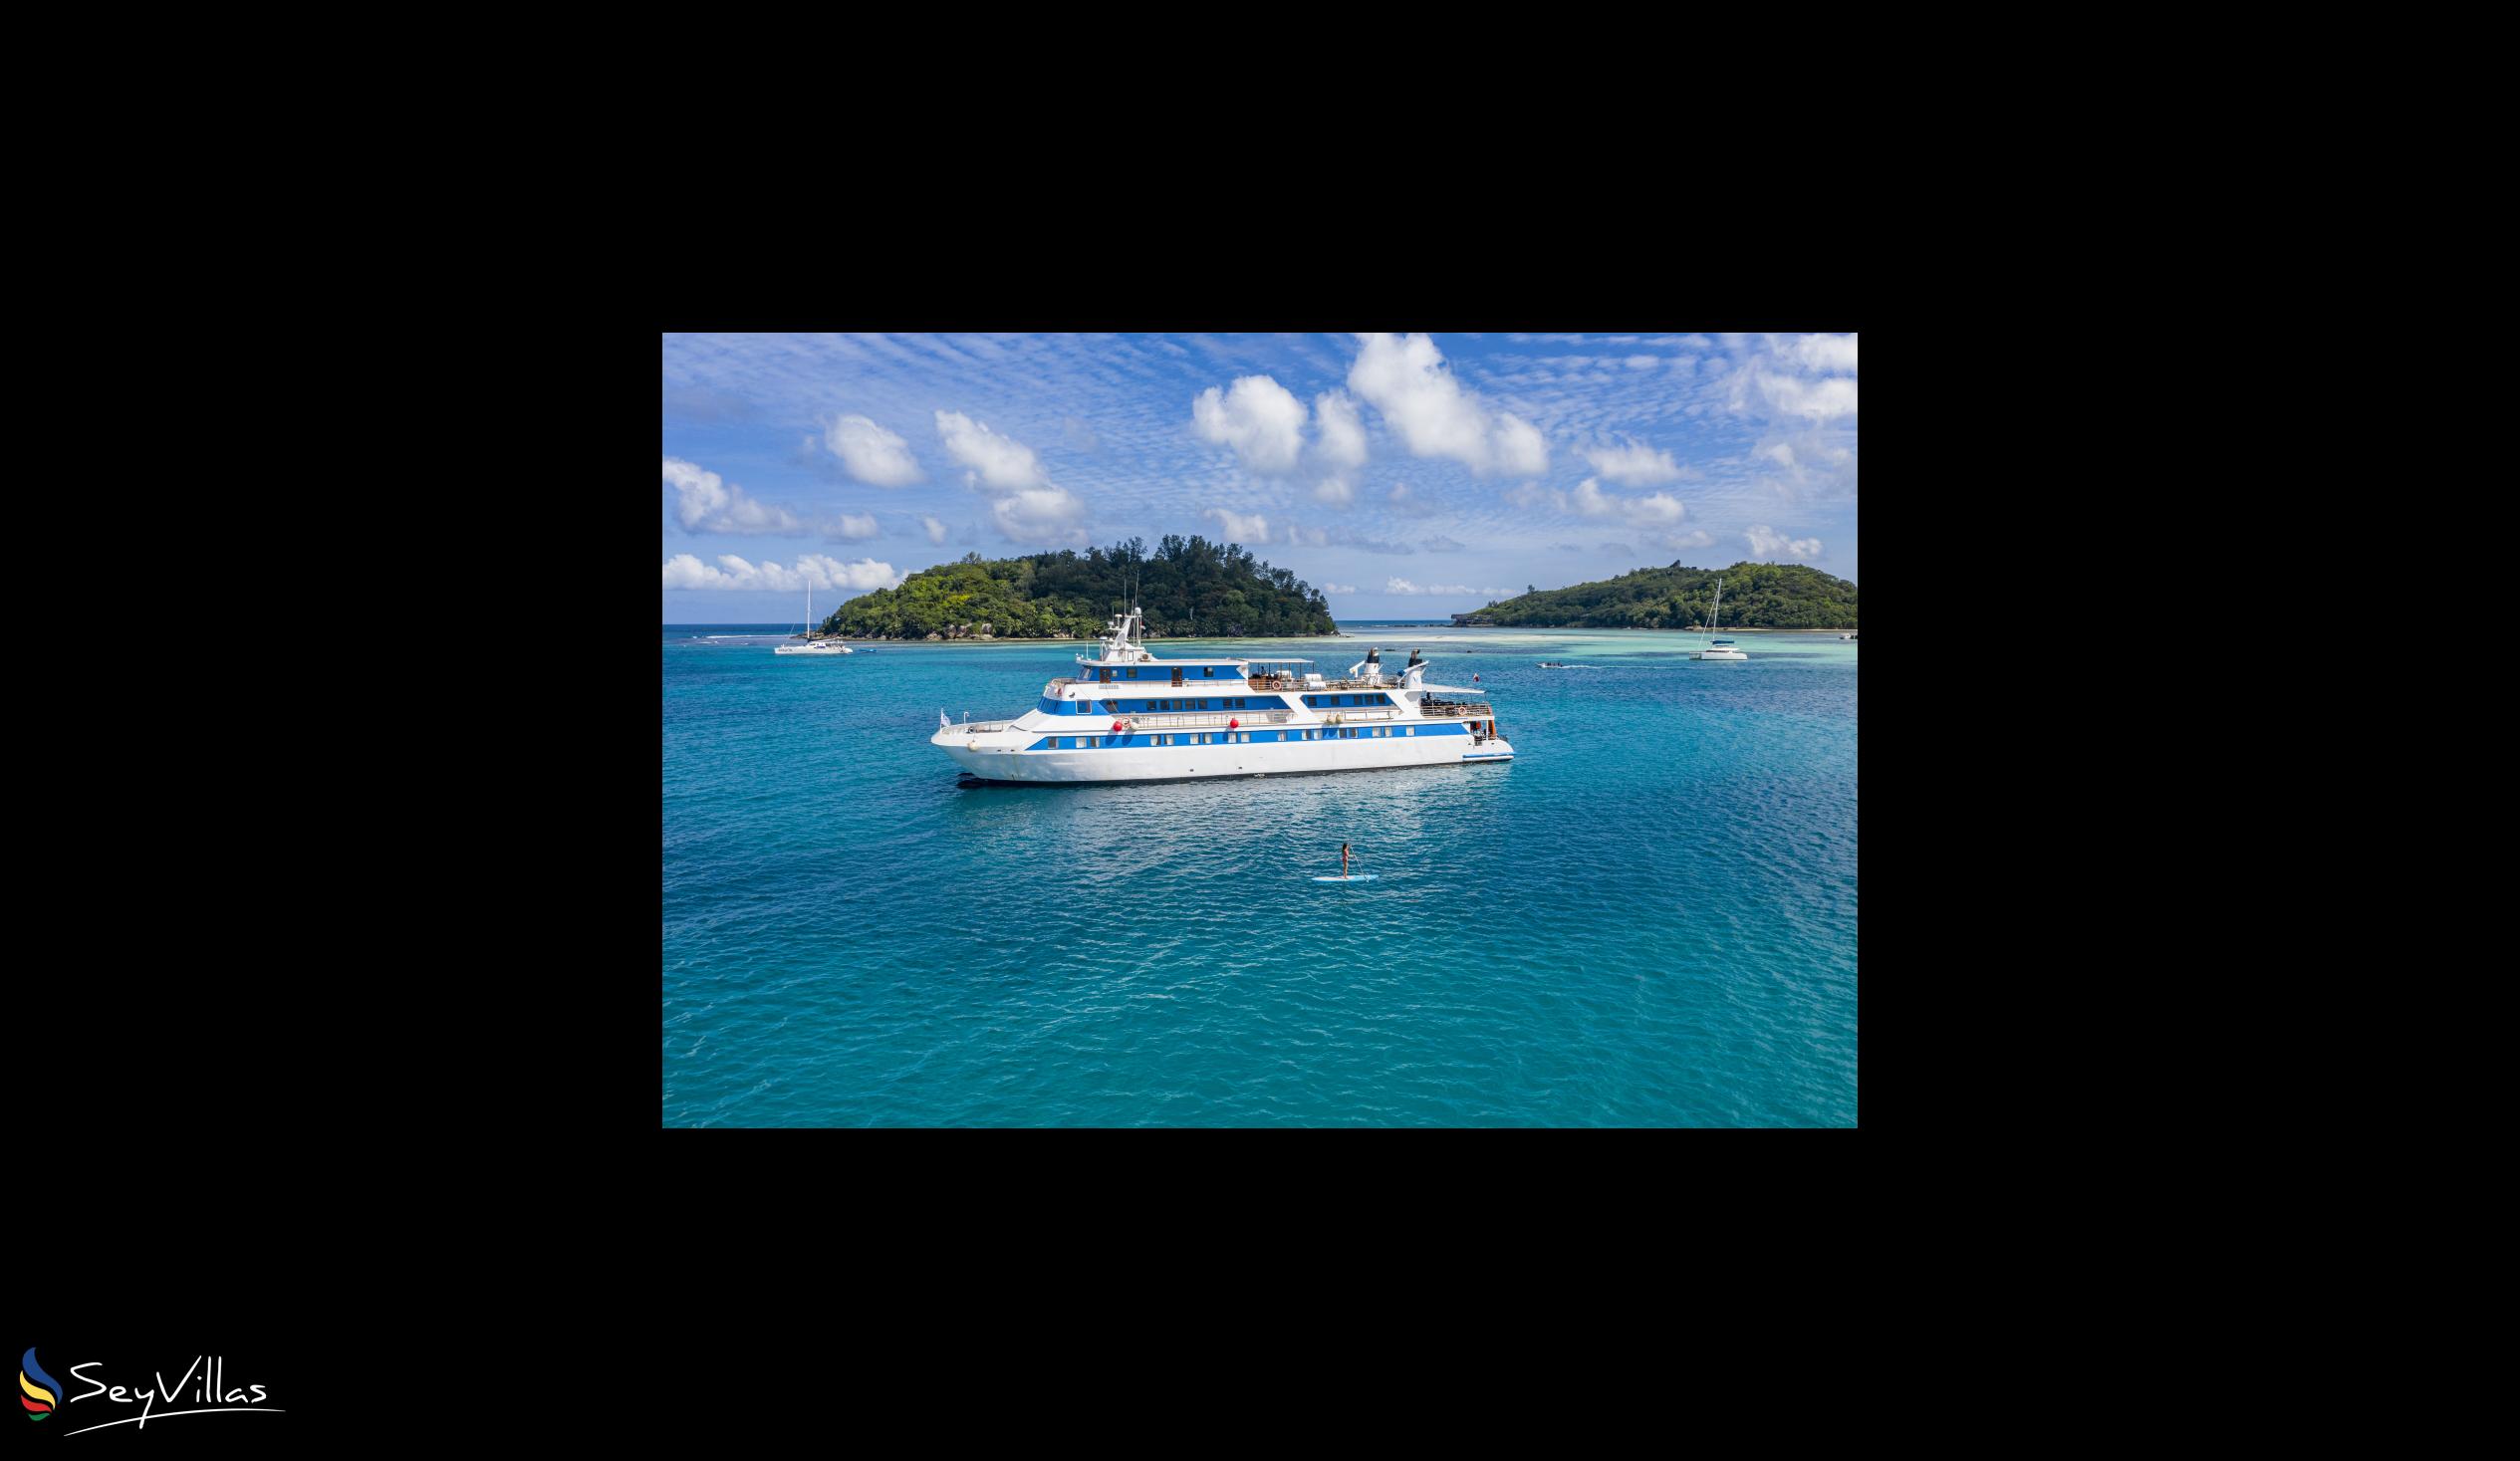 Foto 3: Pegasus Cruise (Variety Garden of Eden 7 nights) - Aussenbereich - Seychellen (Seychellen)